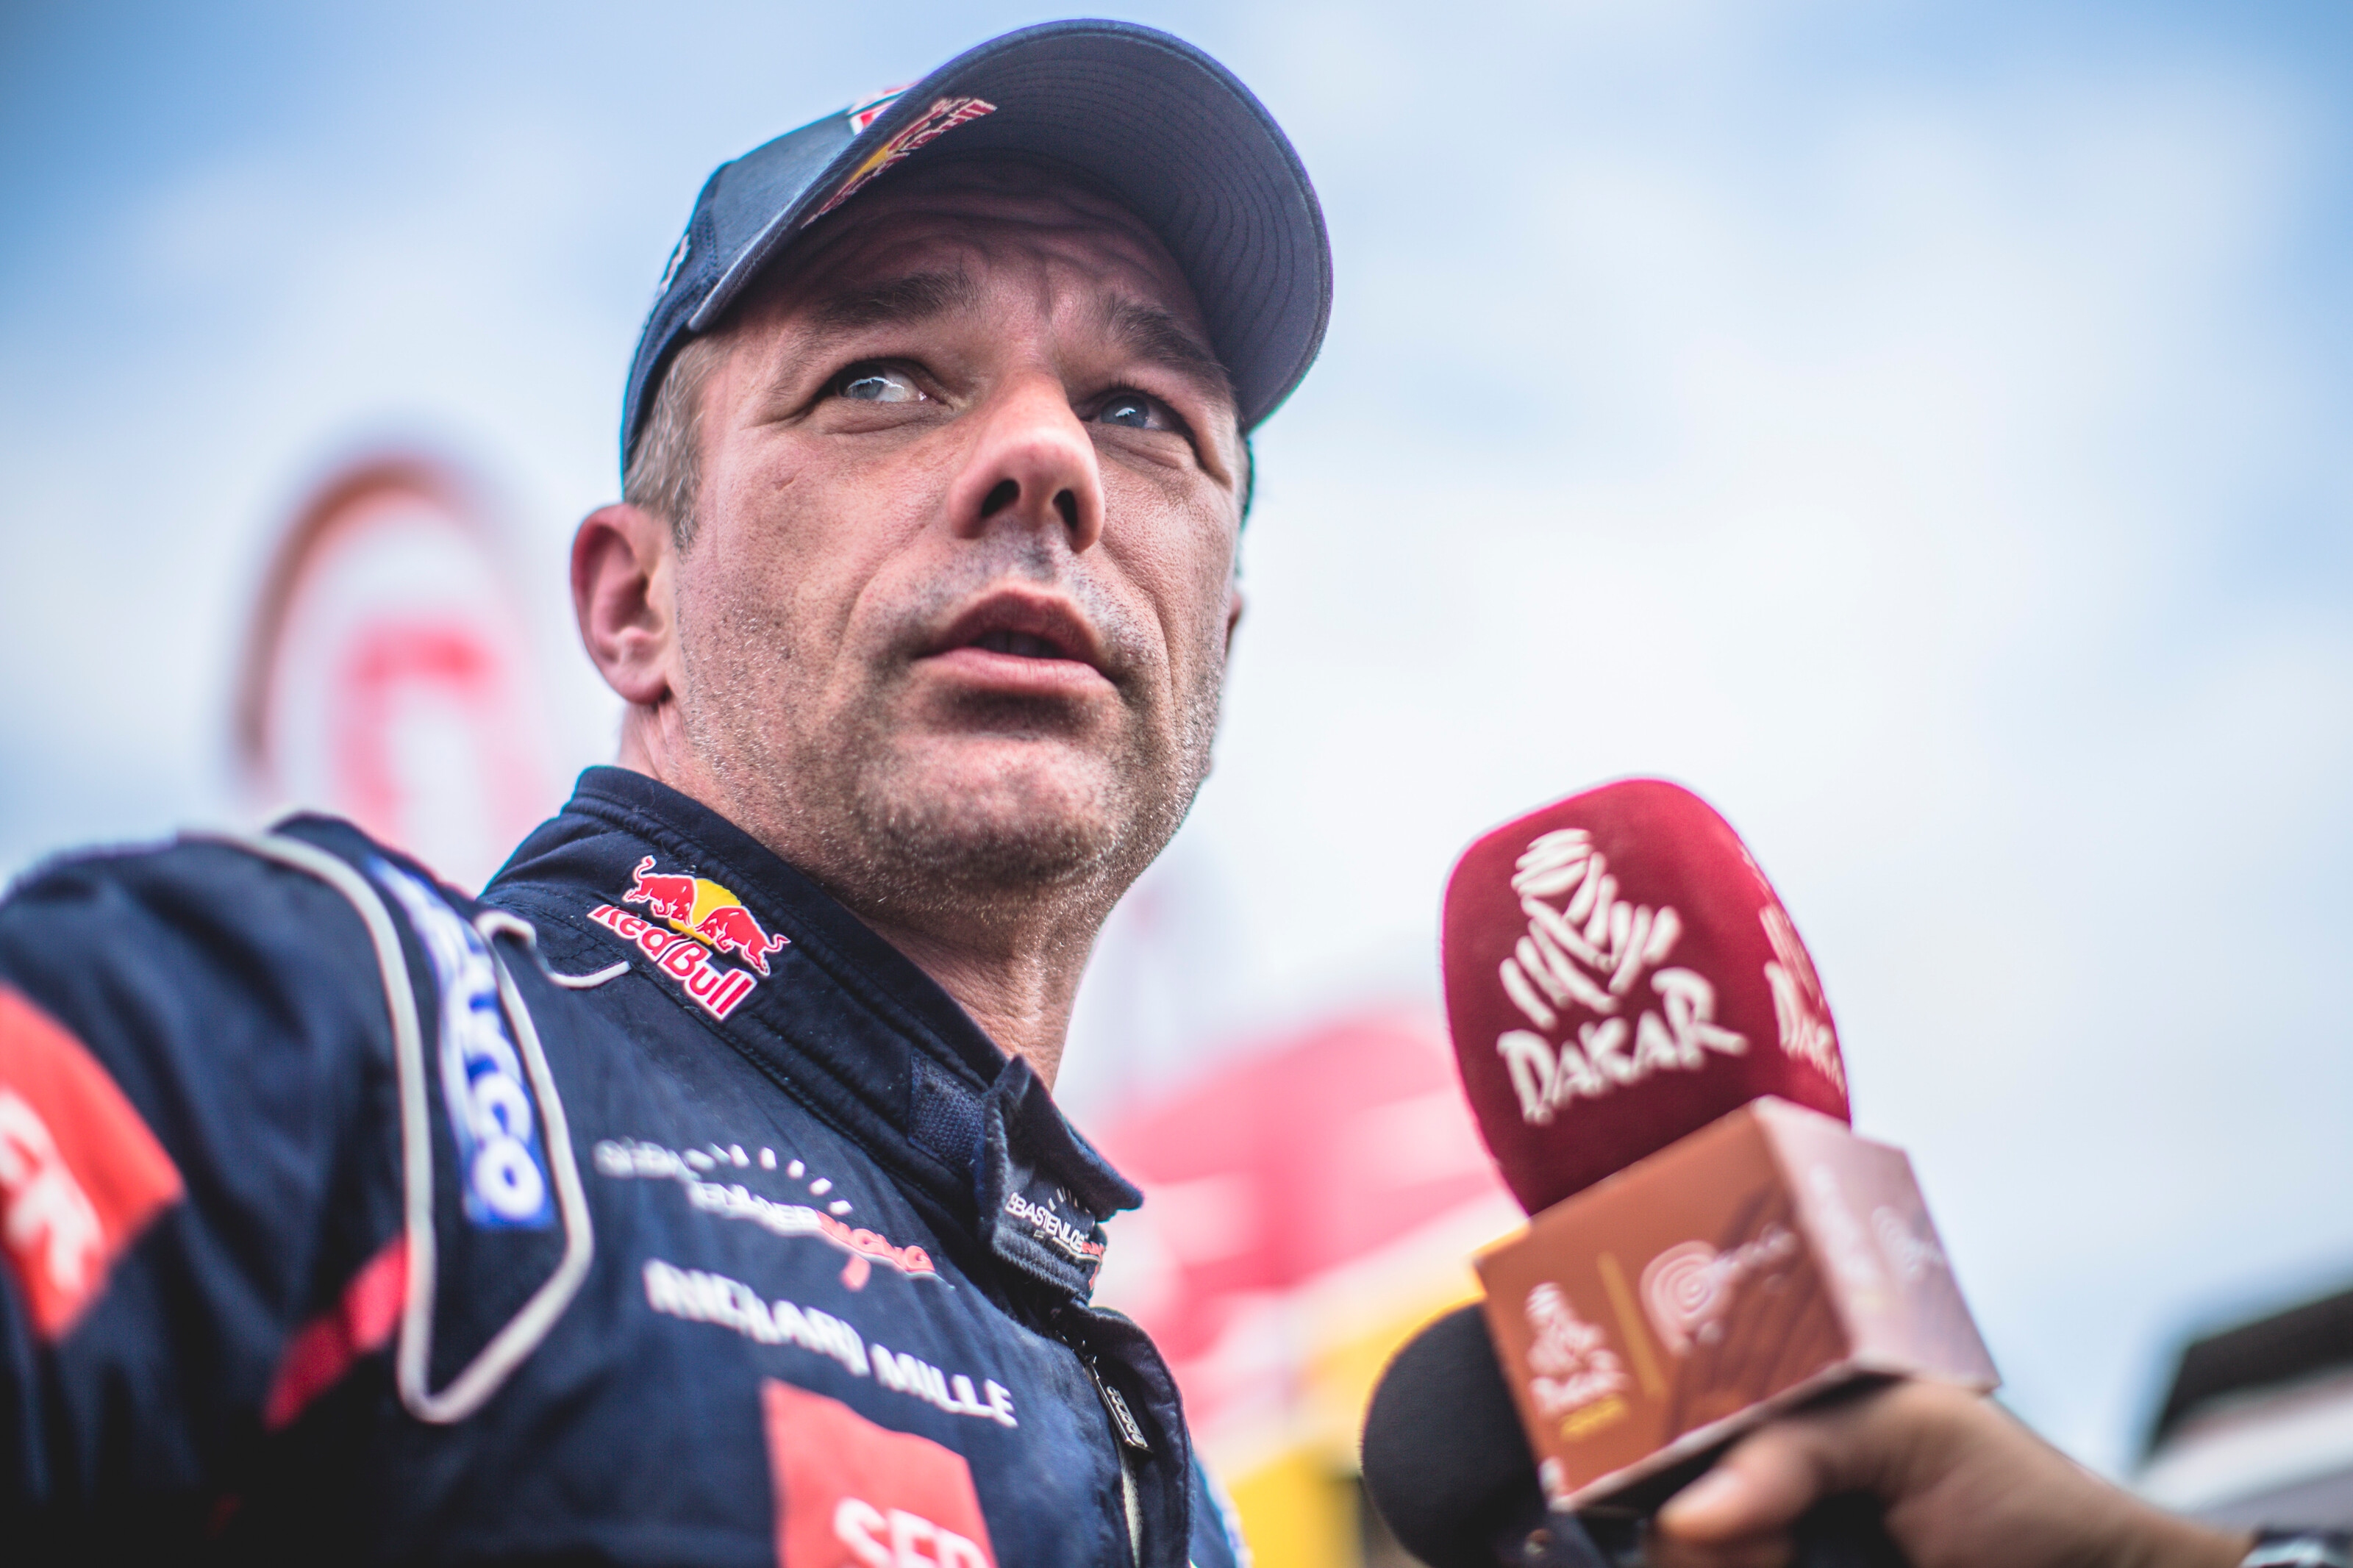 След две поредни етапни победи деветкратният WRC шампион Себастиен Льоб